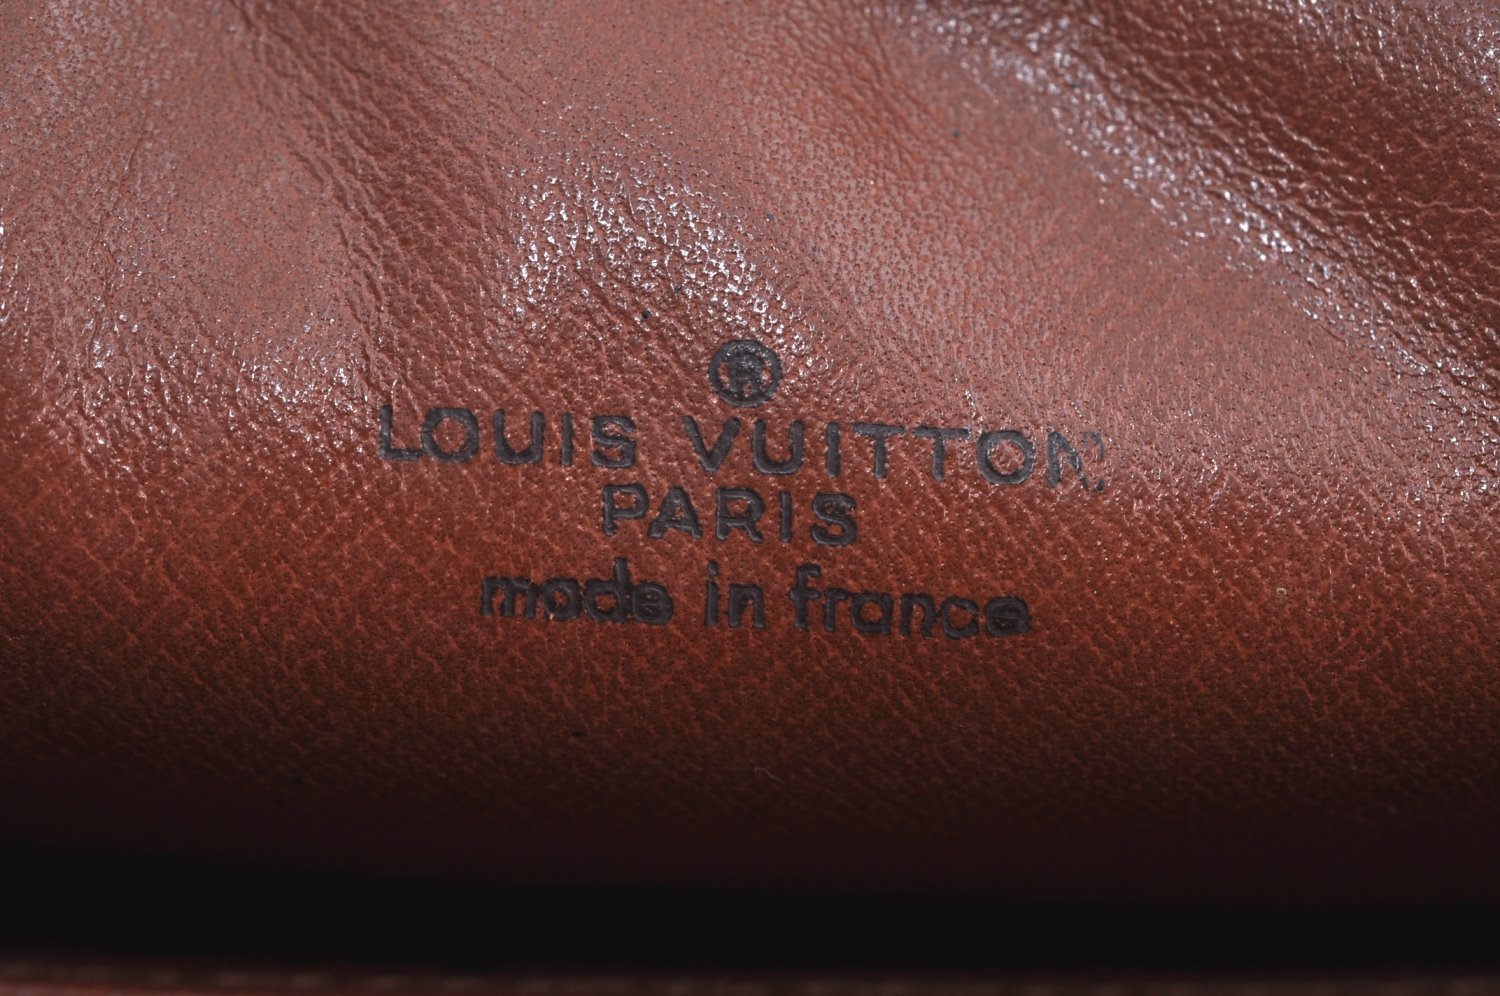 Authentic Louis Vuitton Monogram Compiegne 23 Clutch Hand Bag M51847 Junk K7102